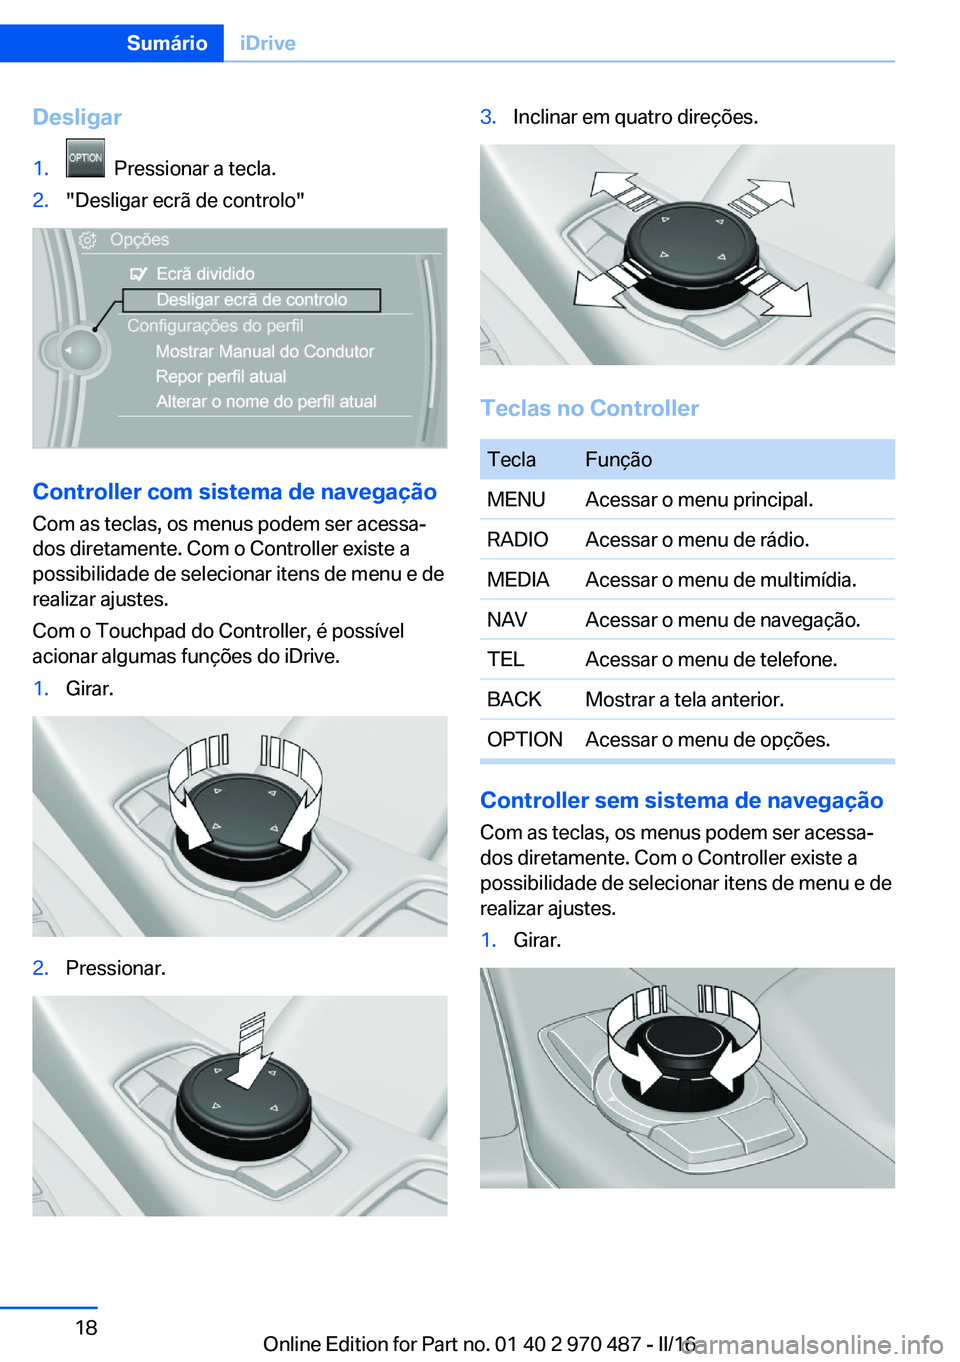 BMW X6 M 2016  Manual do condutor (in Portuguese) Desligar1.  Pressionar a tecla.2."Desligar ecrã de controlo"
Controller com sistema de navegação
Com as teclas, os menus podem ser acessa‐
dos diretamente. Com o Controller existe a
possi